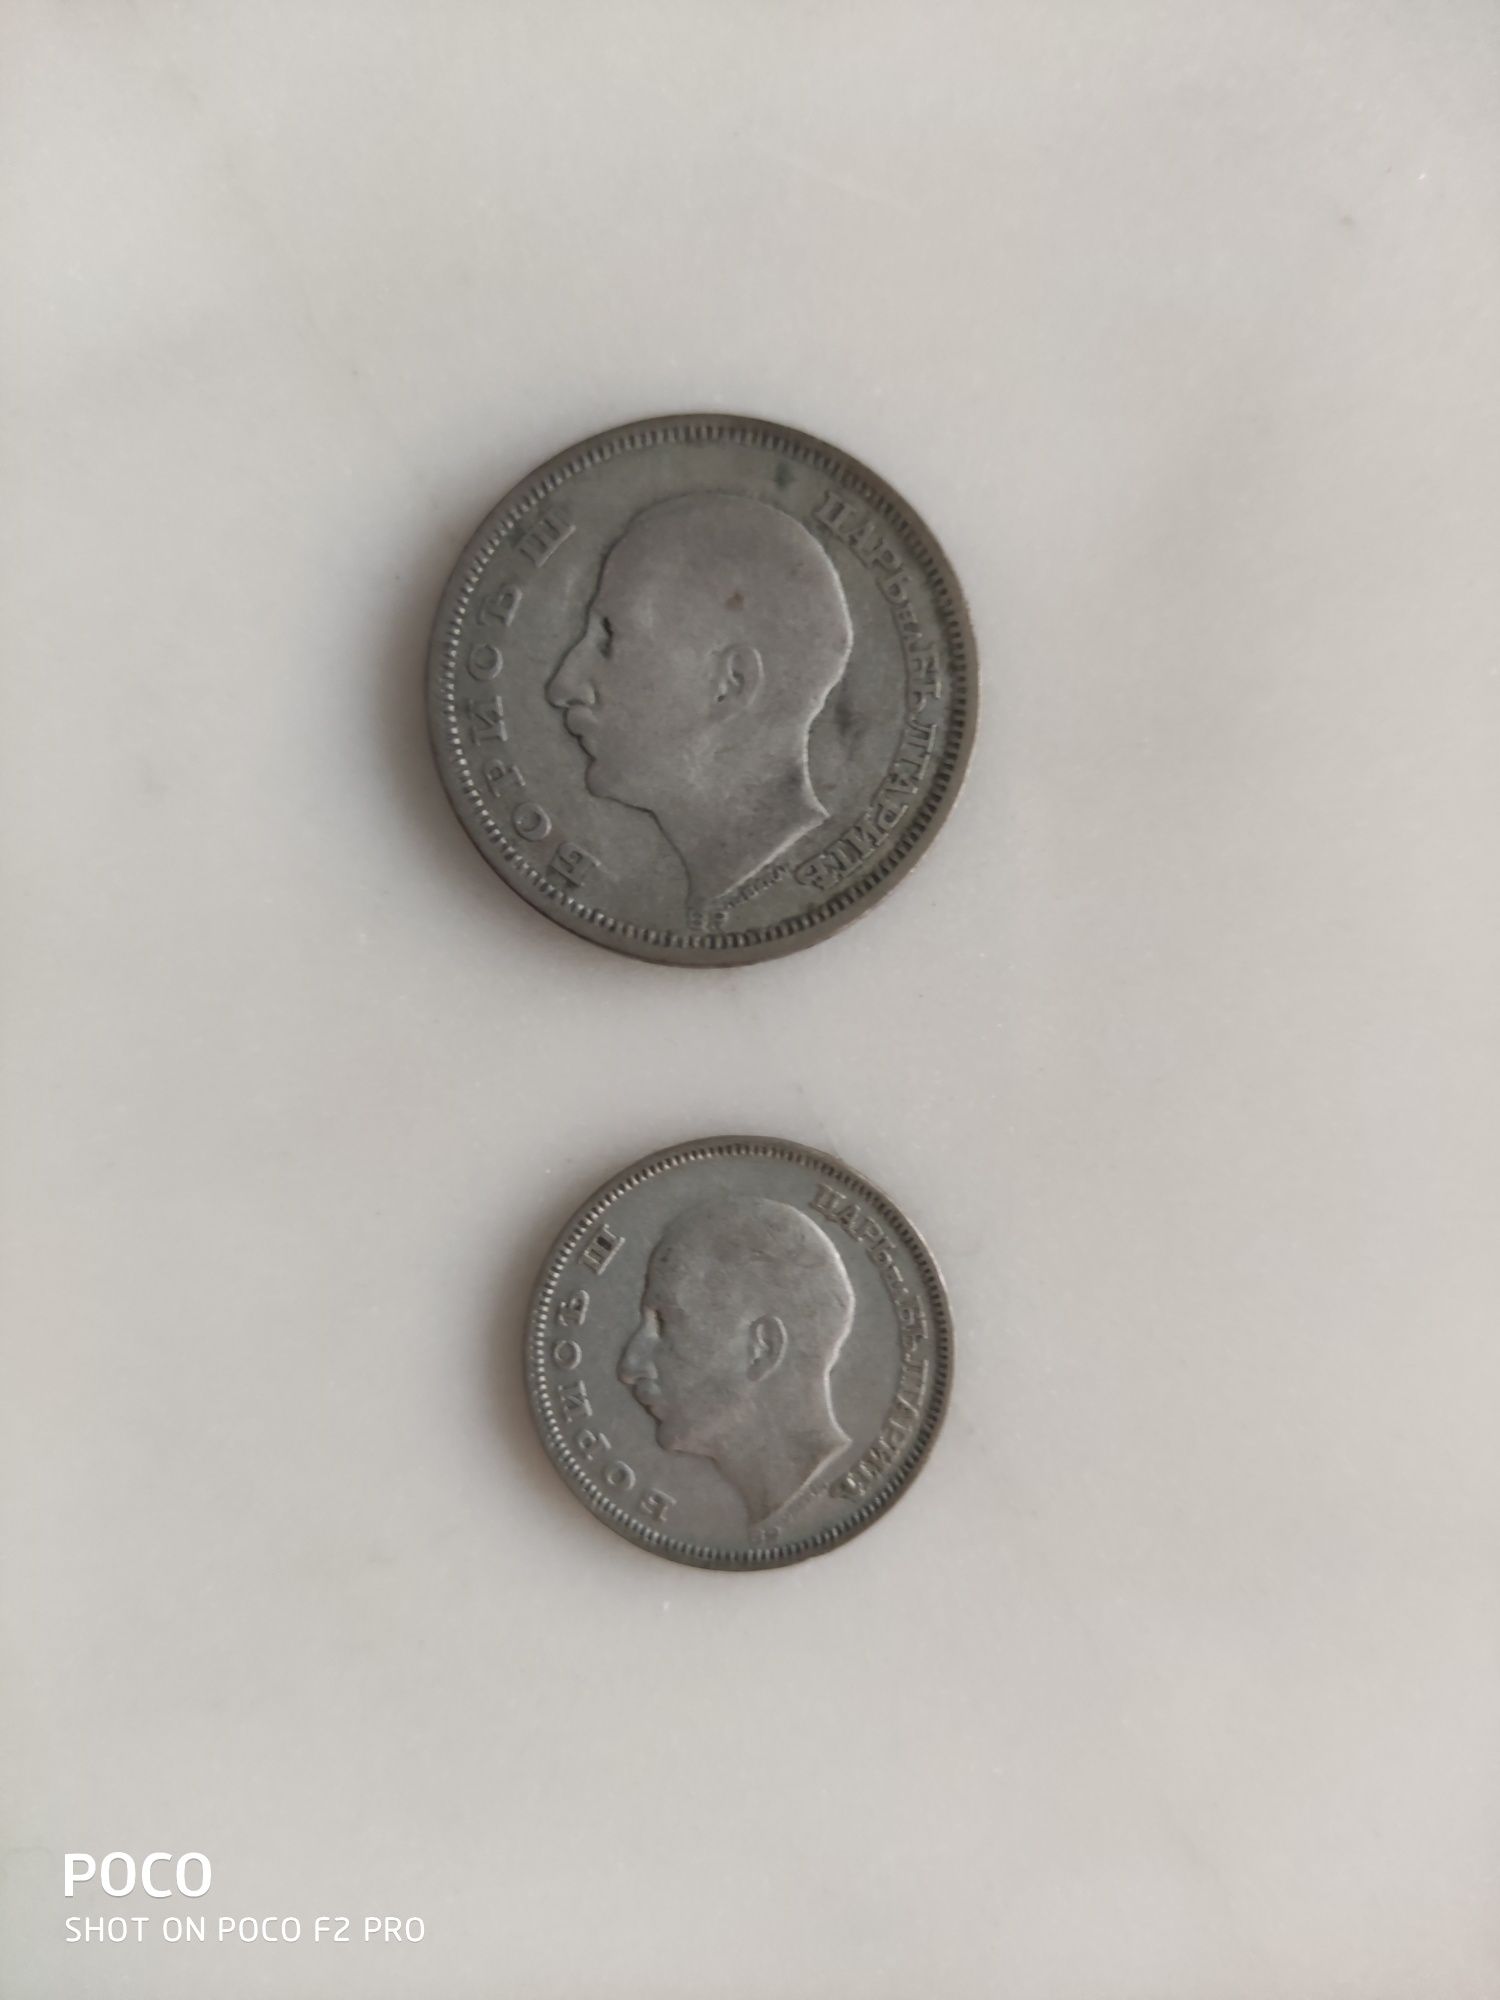 Български монети 50 и 20 лв (1930г.)